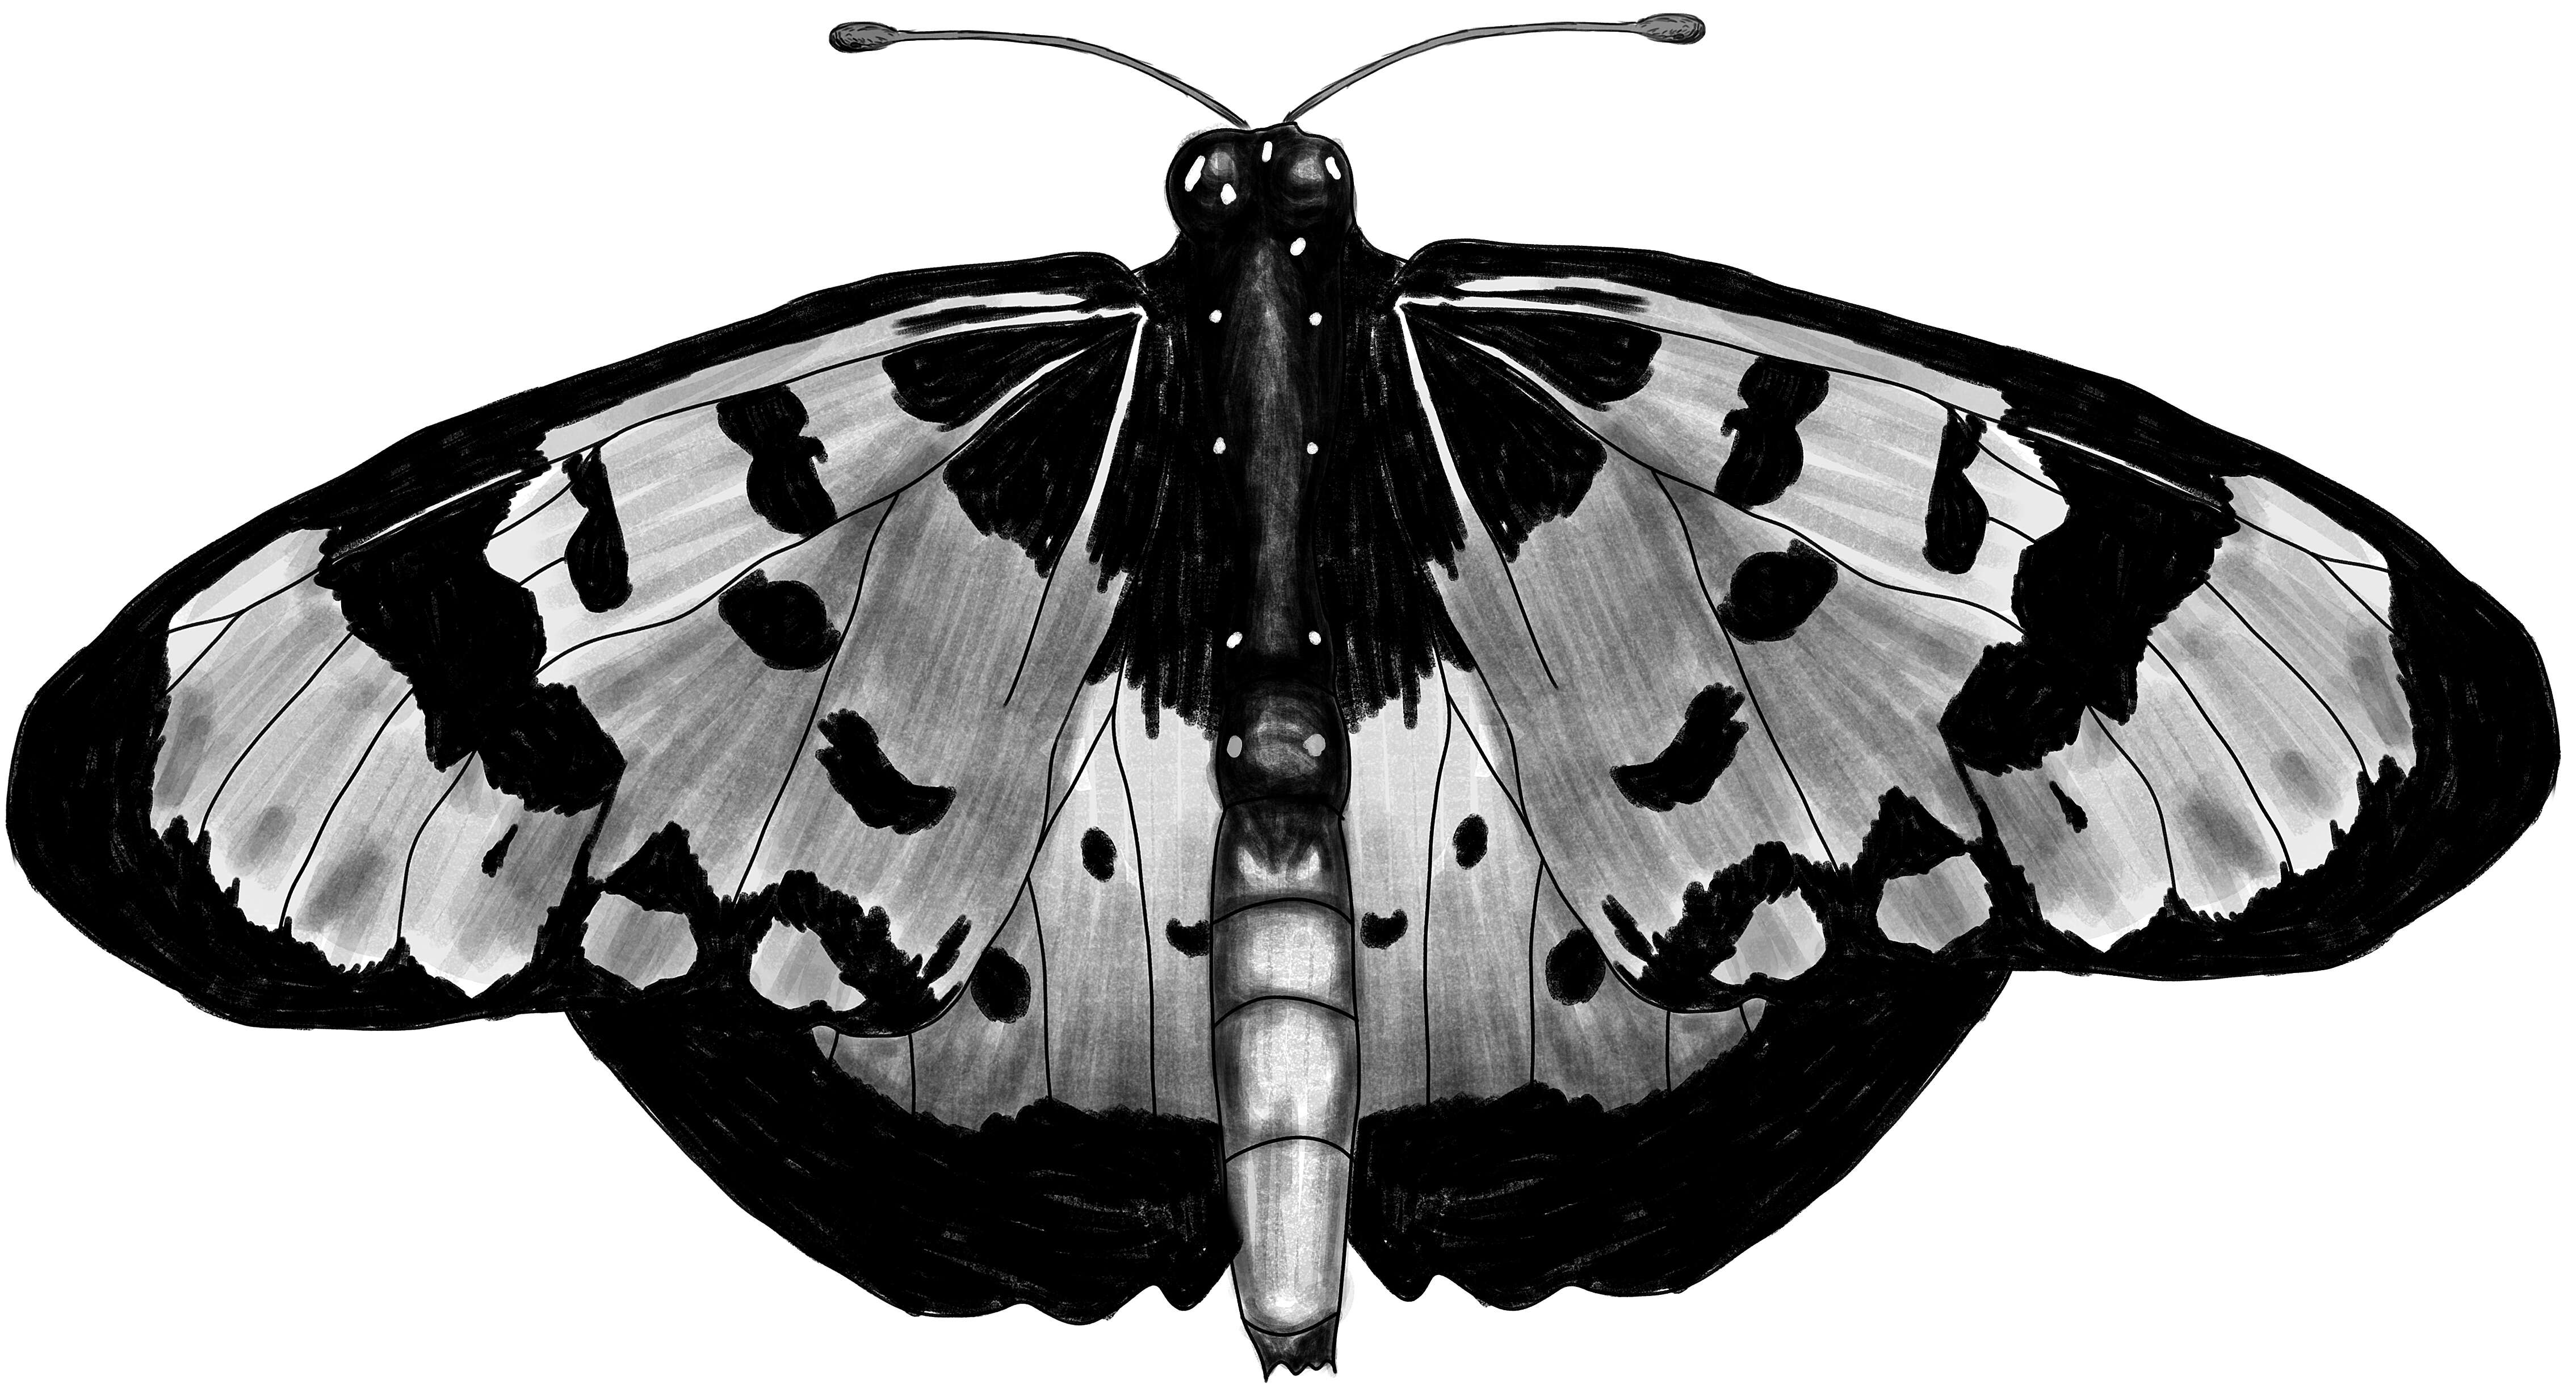 Image of Acraea acara Hewitson 1865